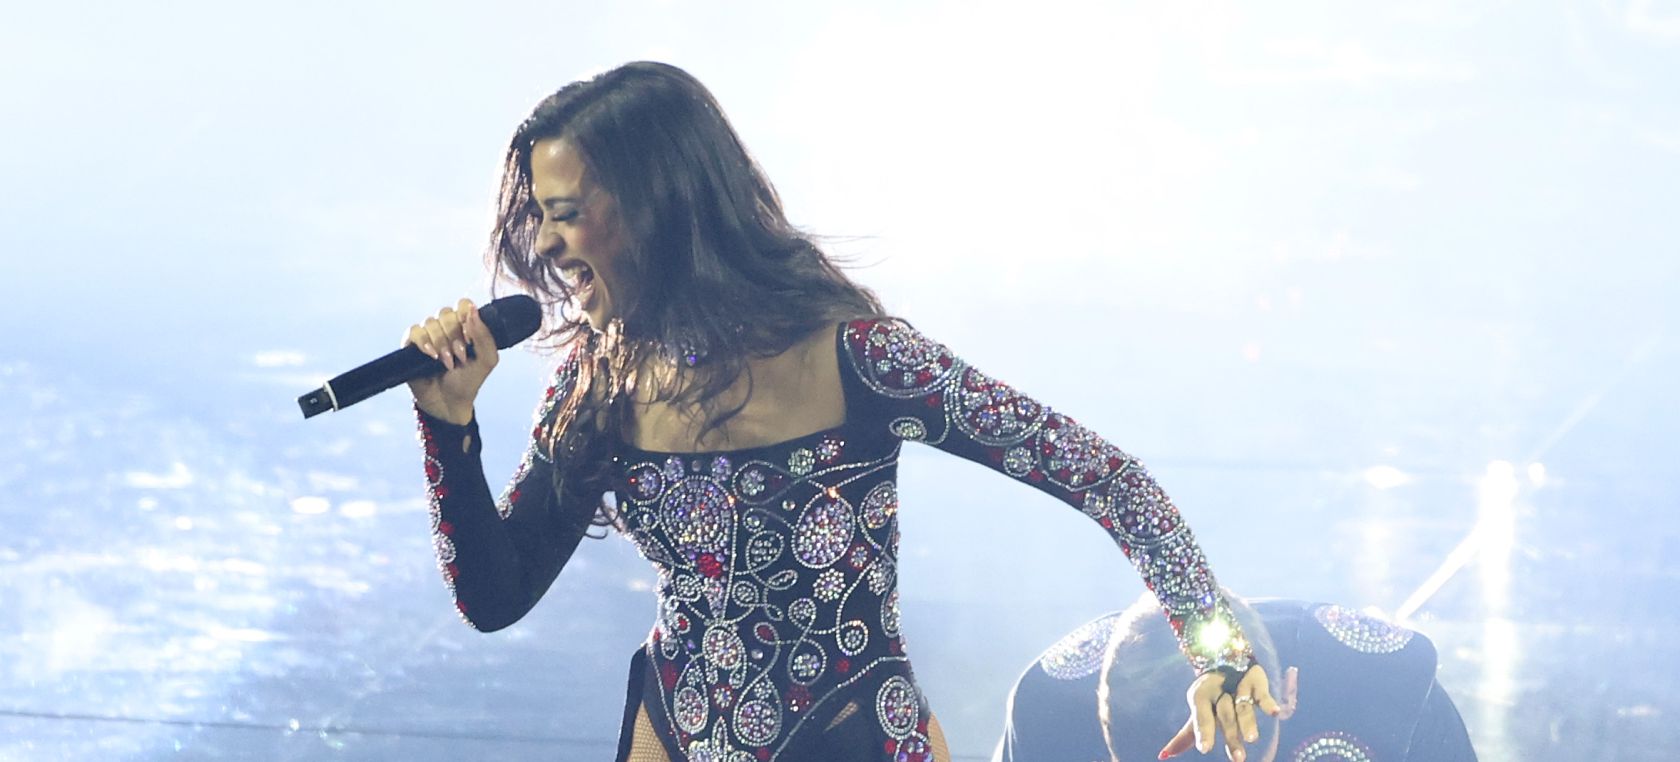 Chanel desvela lo ocurrido con el “fallo” que ha encontrado en su actuación de Eurovisión